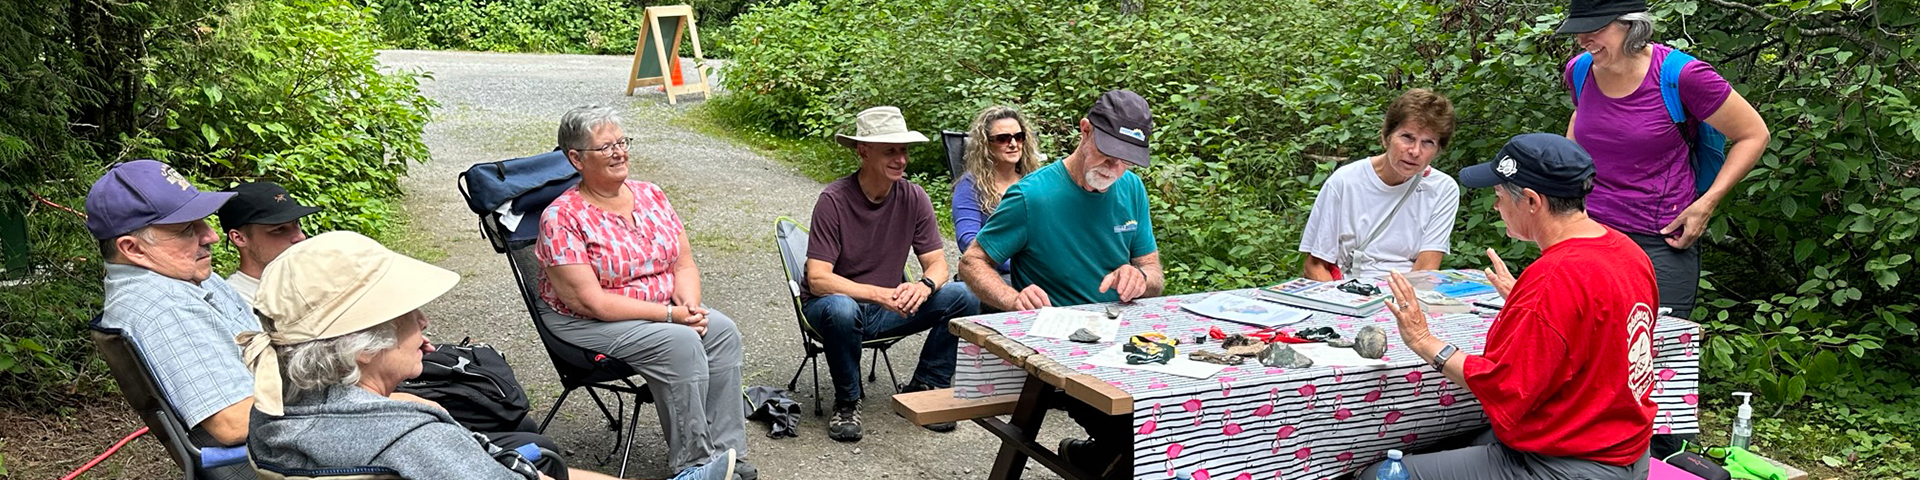 La Dre Joanna Hodge parle de géologie avec des campeurs lors d’une séance ponctuelle sur son site de camping.